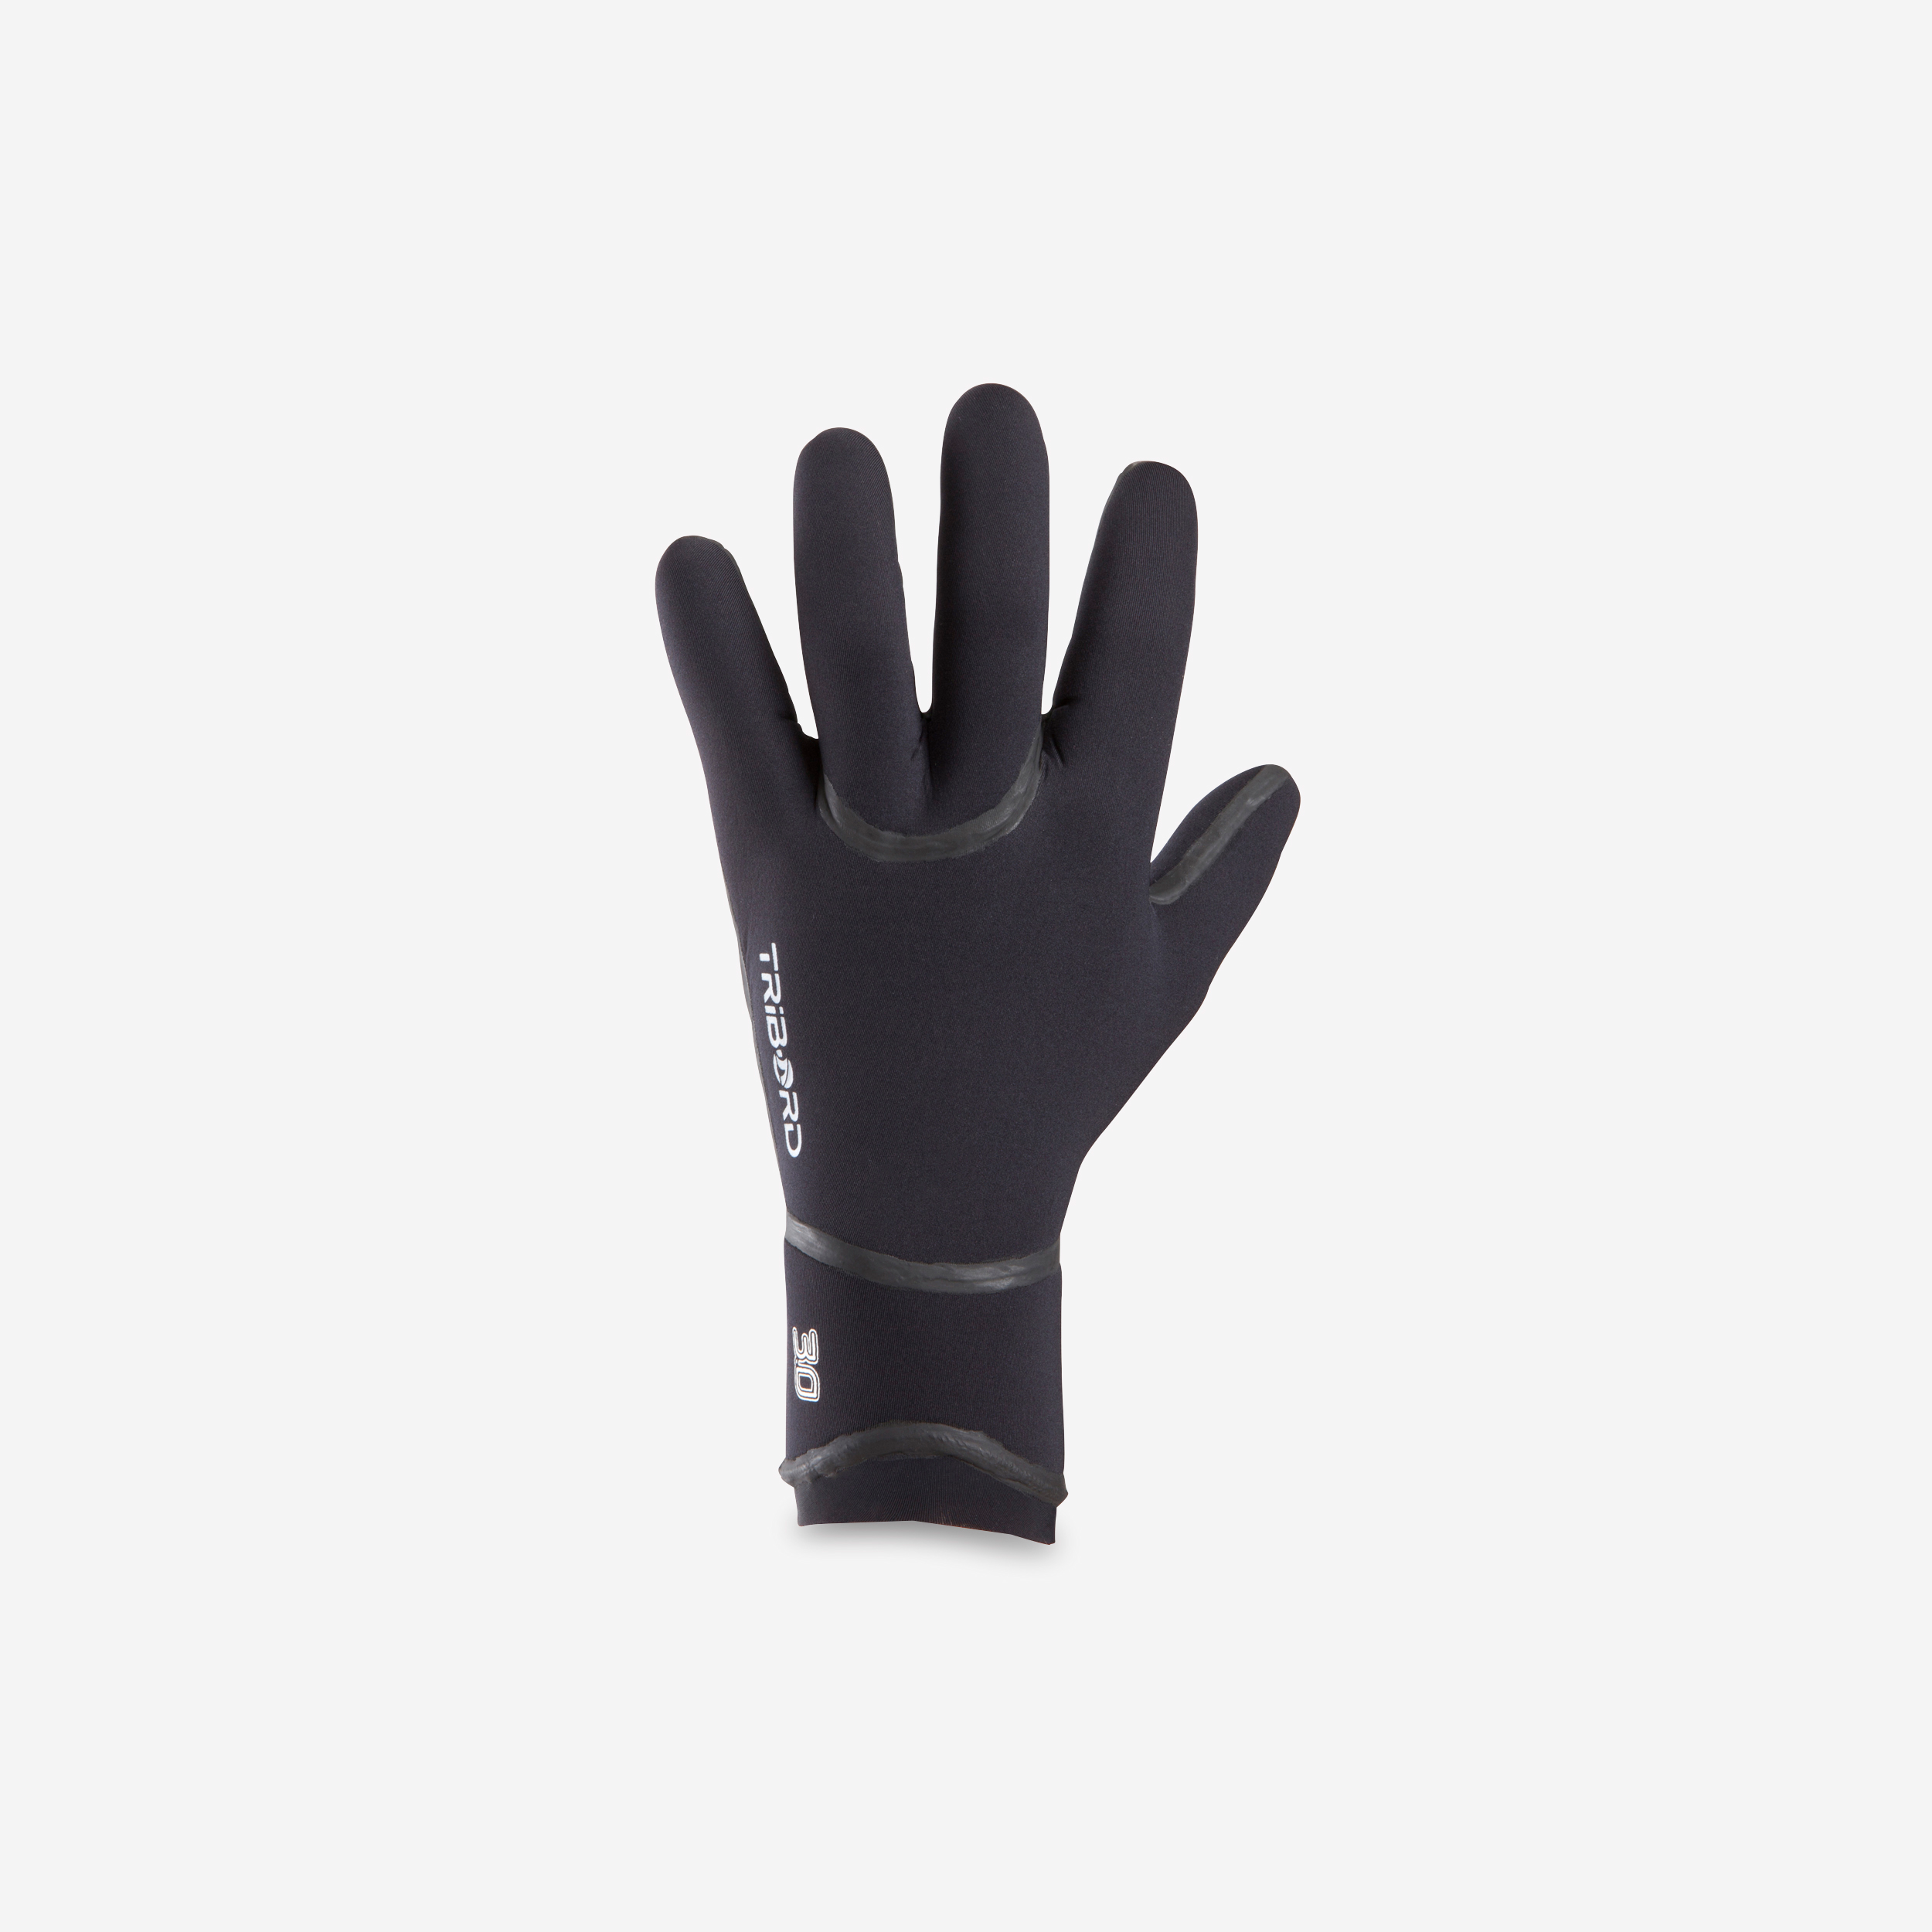 Les gants néoprènes pour pêcher l'hiver 